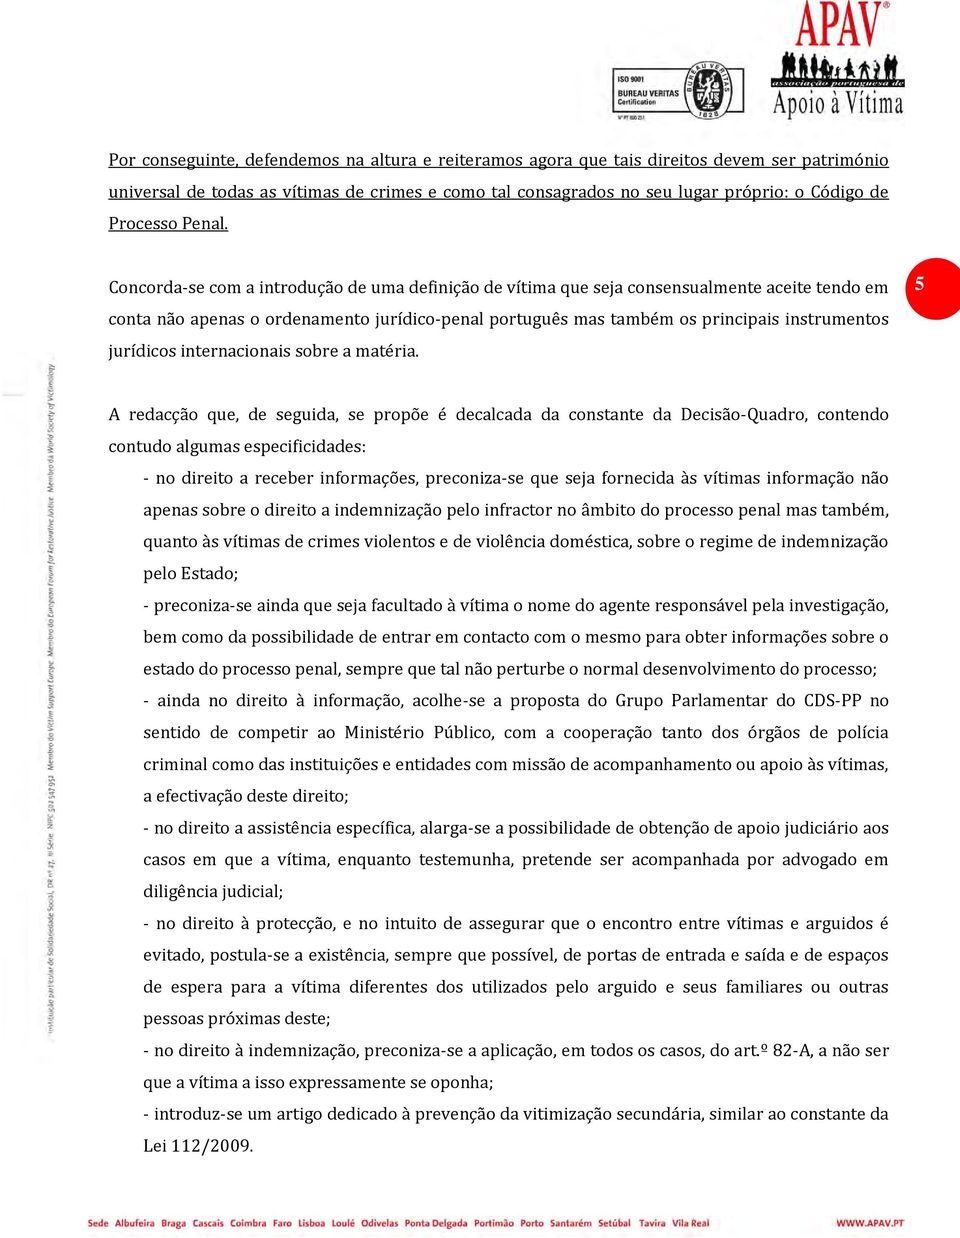 Concorda-se com a introdução de uma definição de vítima que seja consensualmente aceite tendo em conta não apenas o ordenamento jurídico-penal português mas também os principais instrumentos